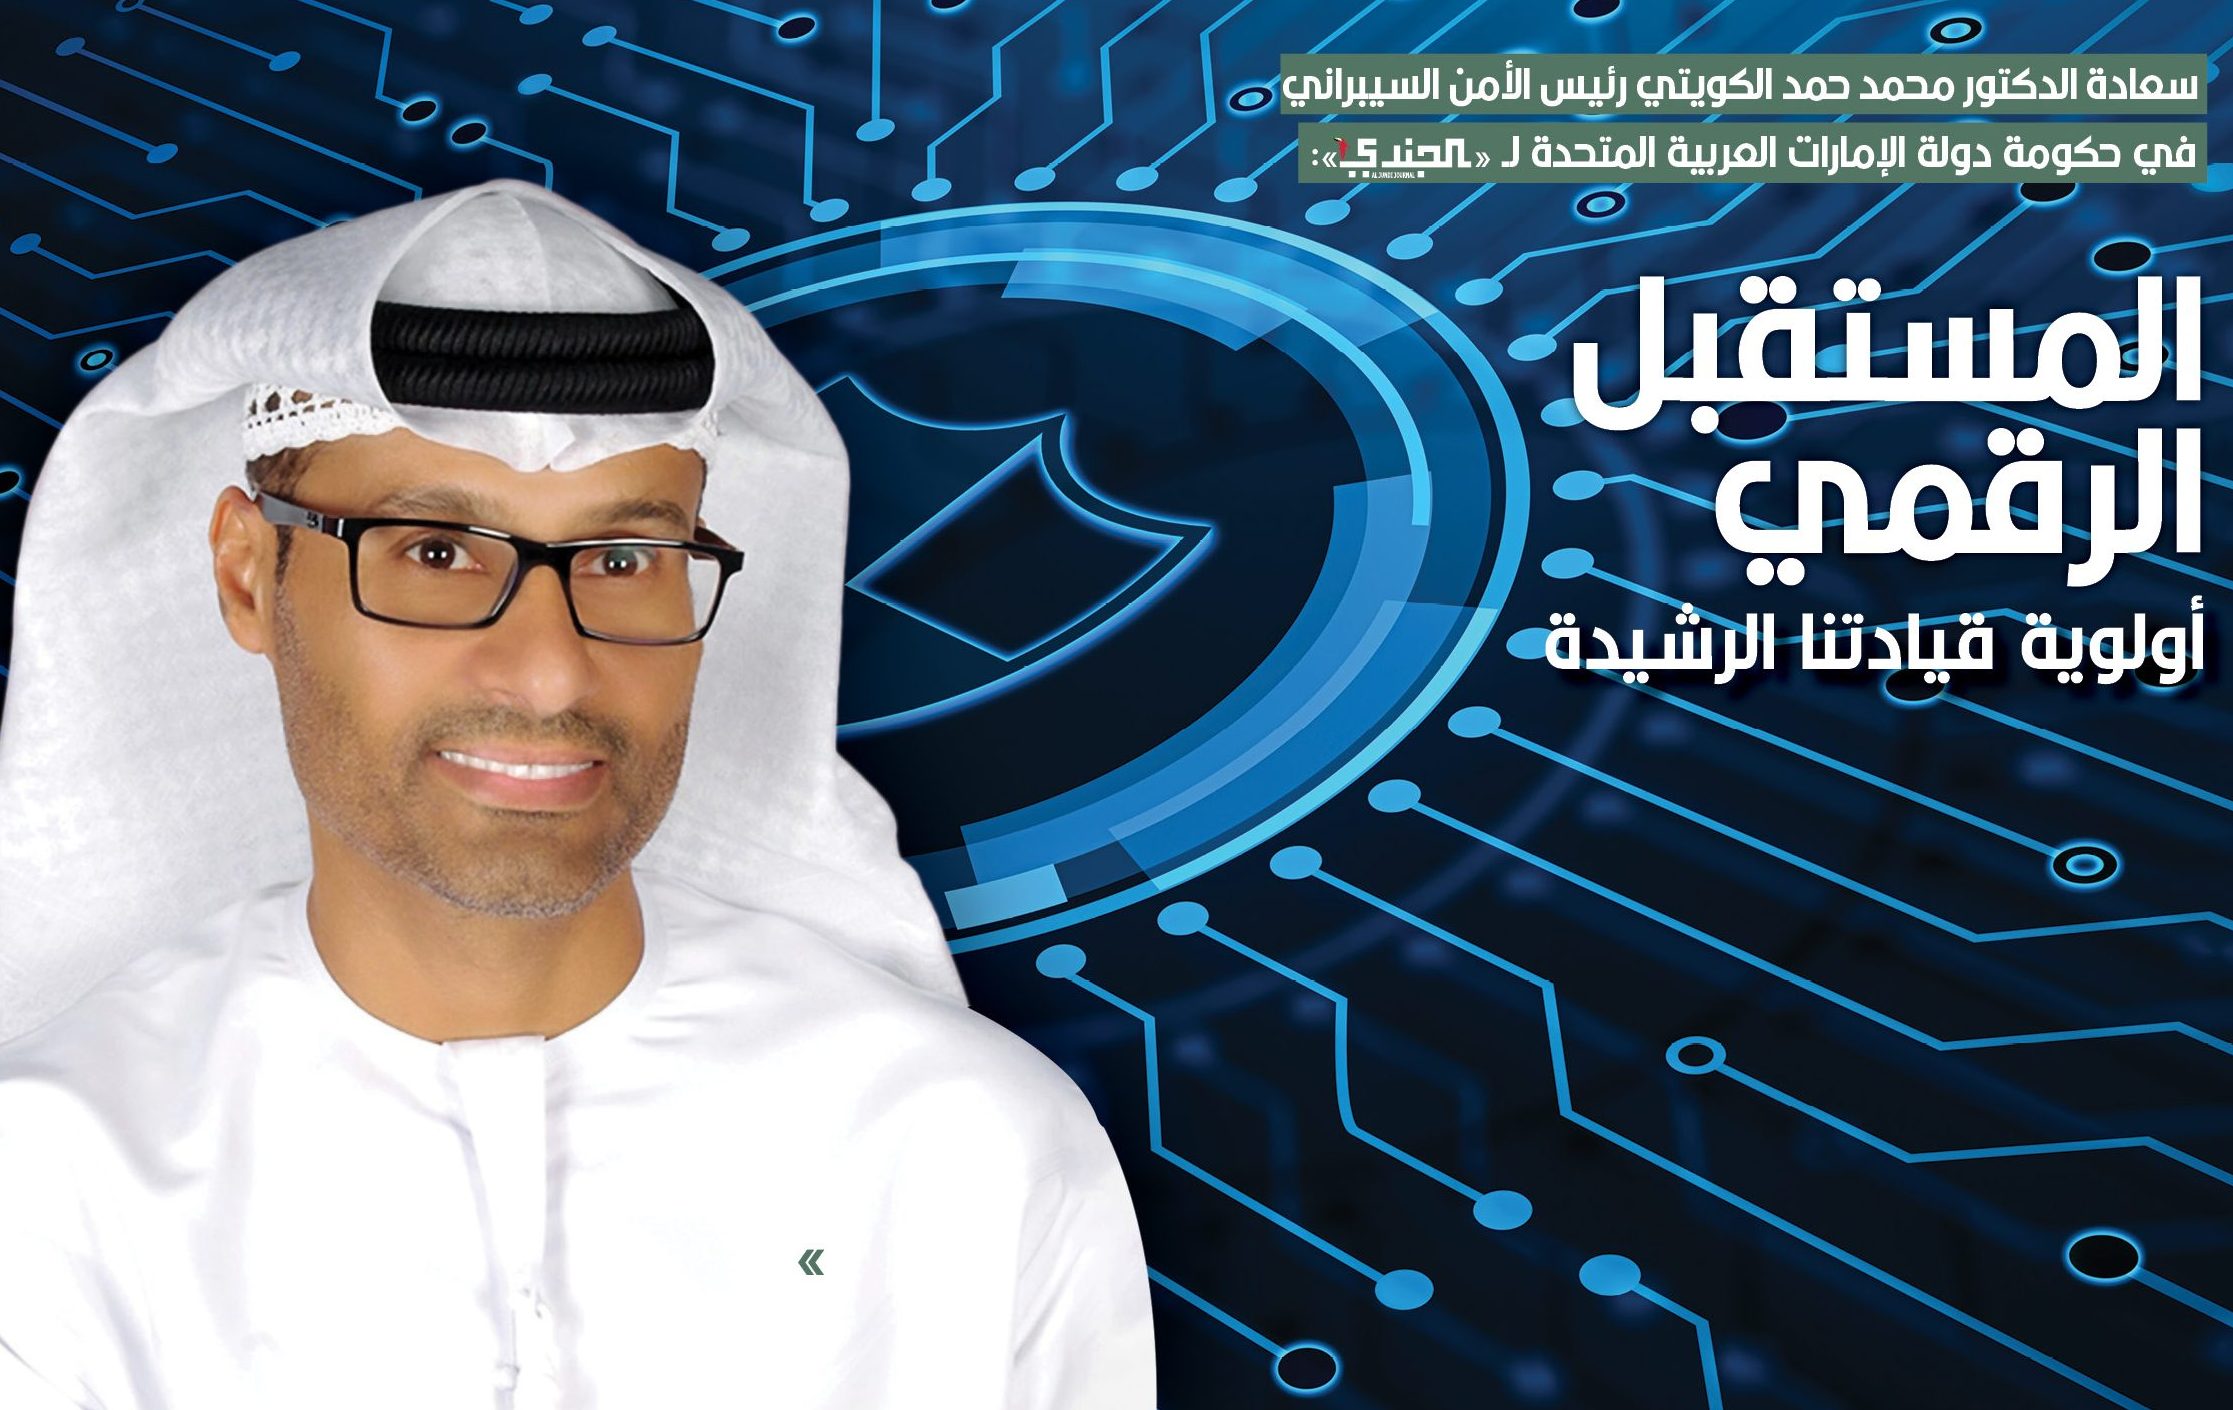 الدكتور محمد حمد الكويتي، رئيس الأمن ومن قـادة المسـتقبل السيبراني لحكومة الإمارات